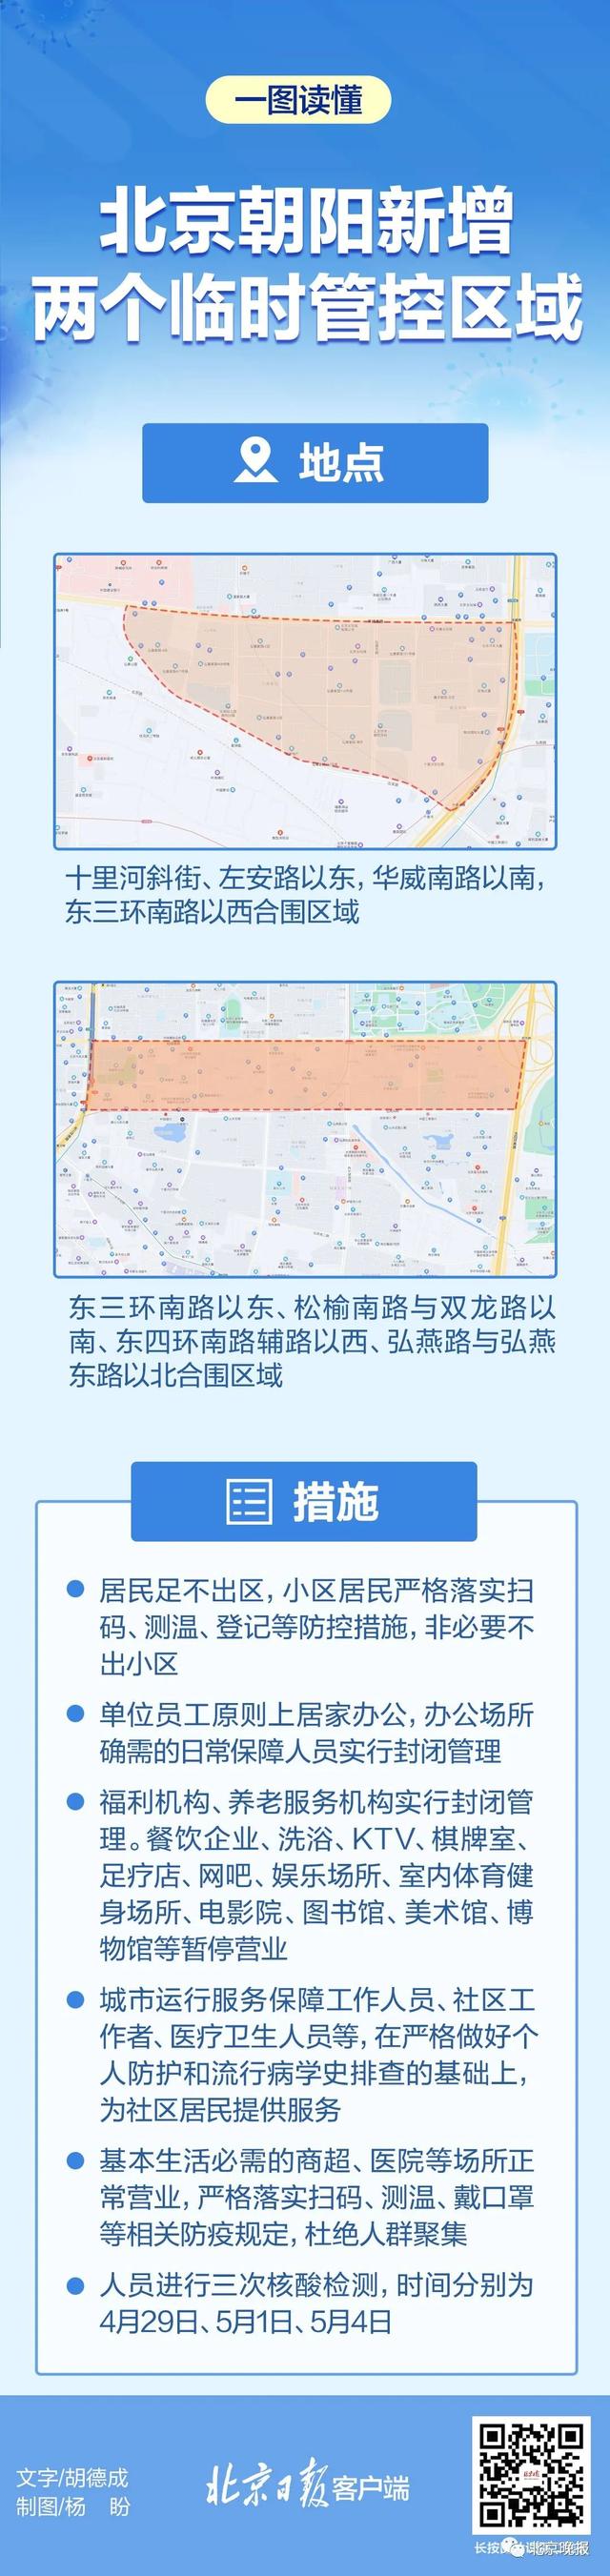 北京朝阳新增两个临时管控区